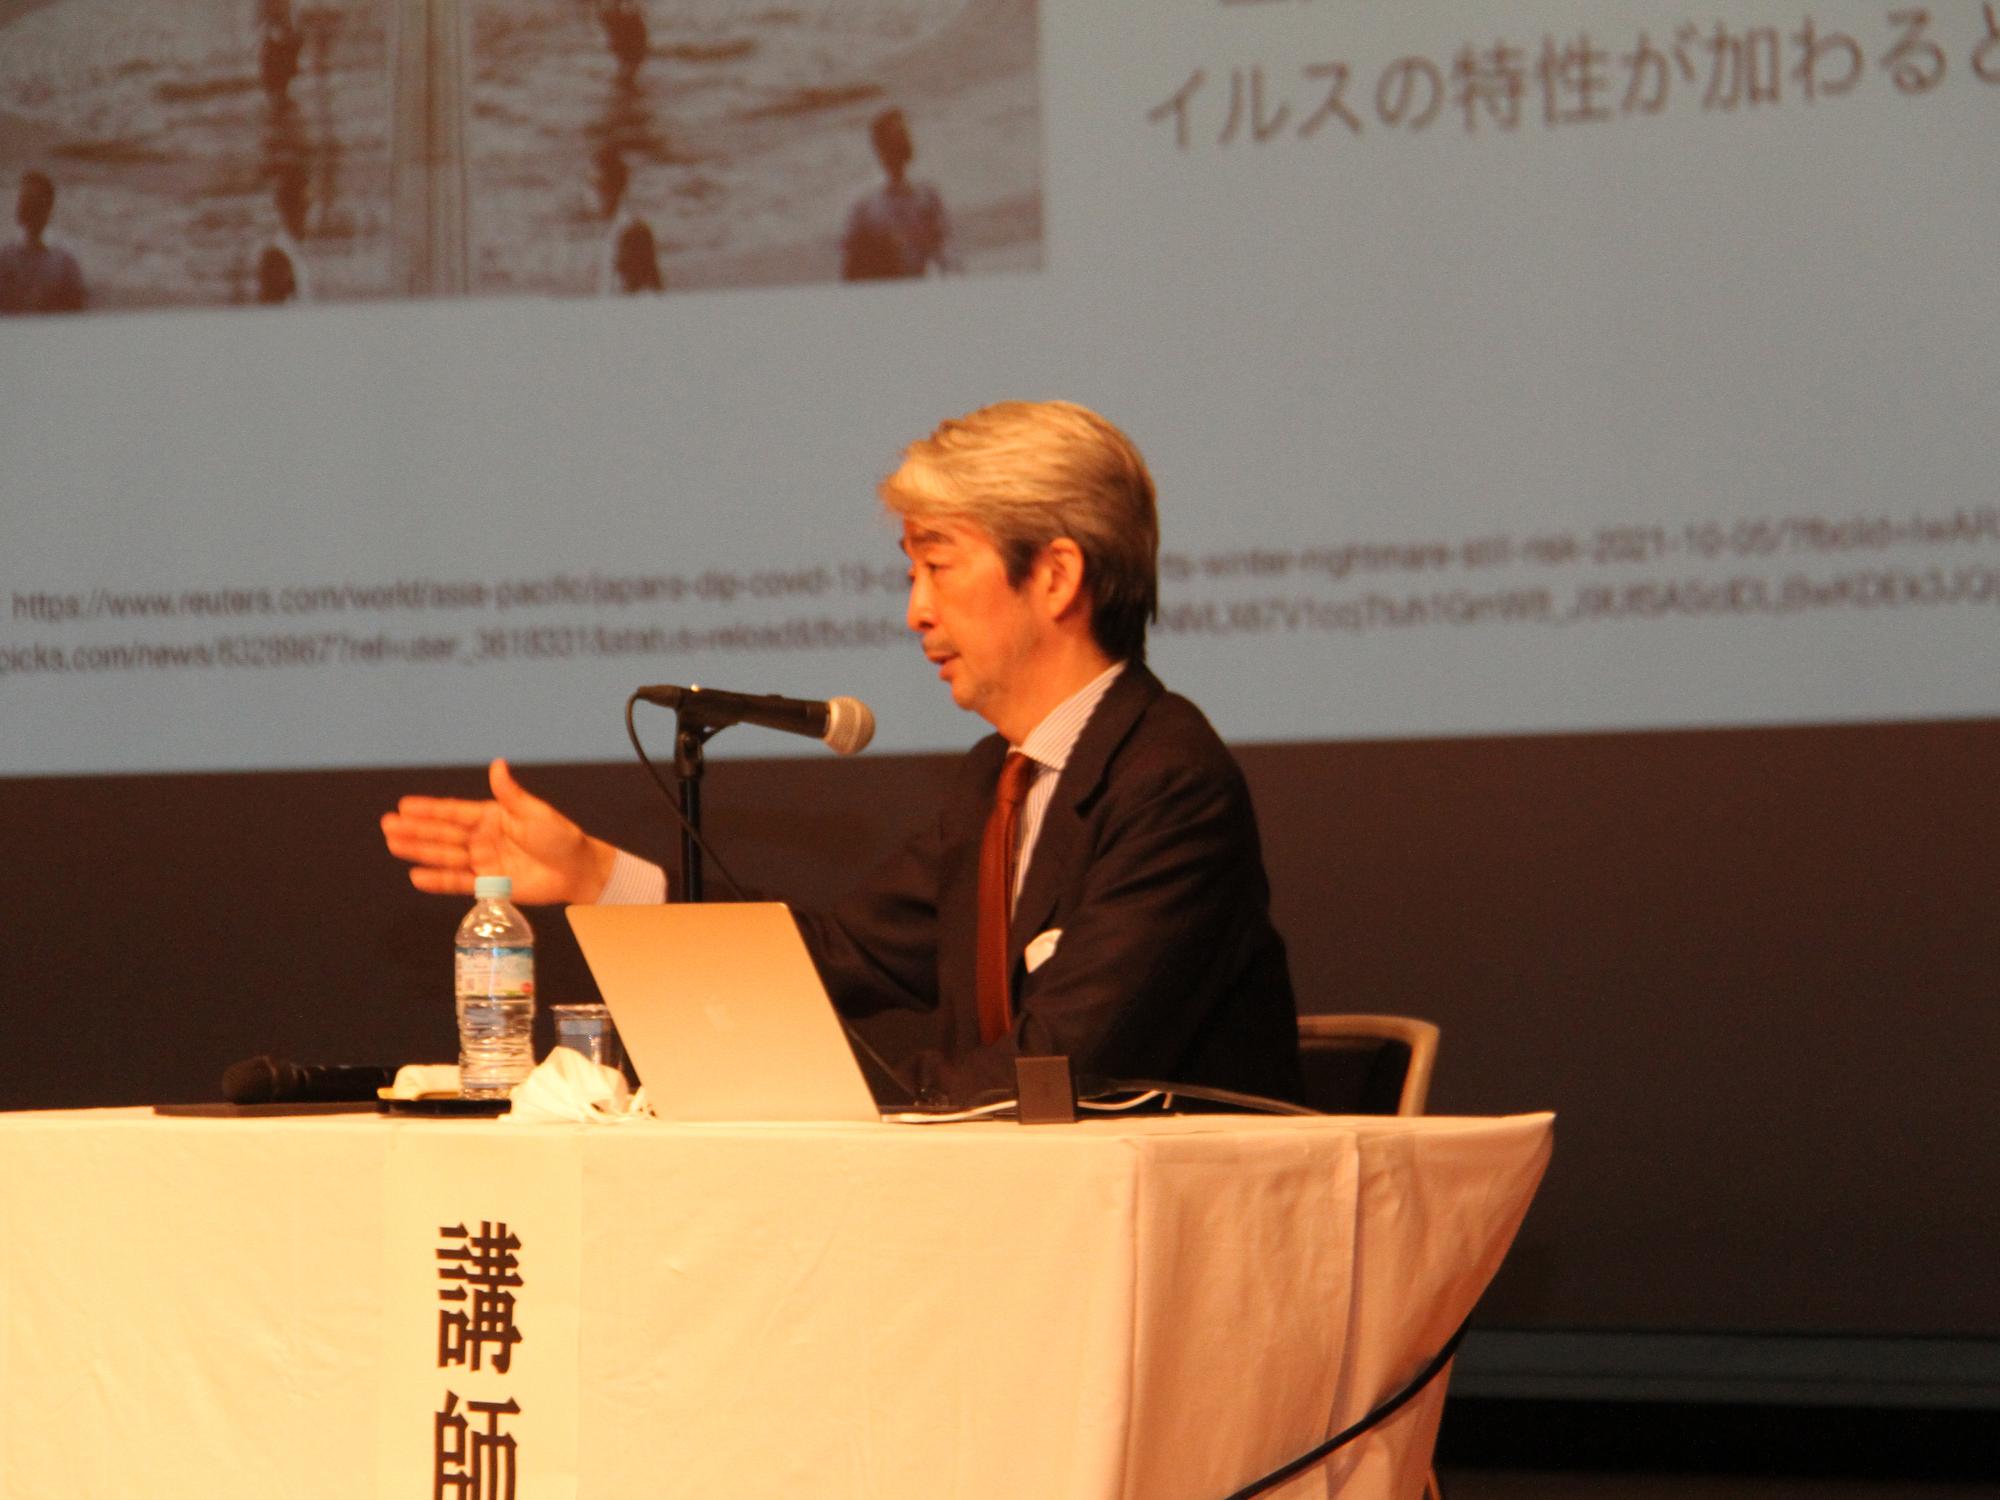 合同研修会及び公開講座で講演する渋谷センター長の様子